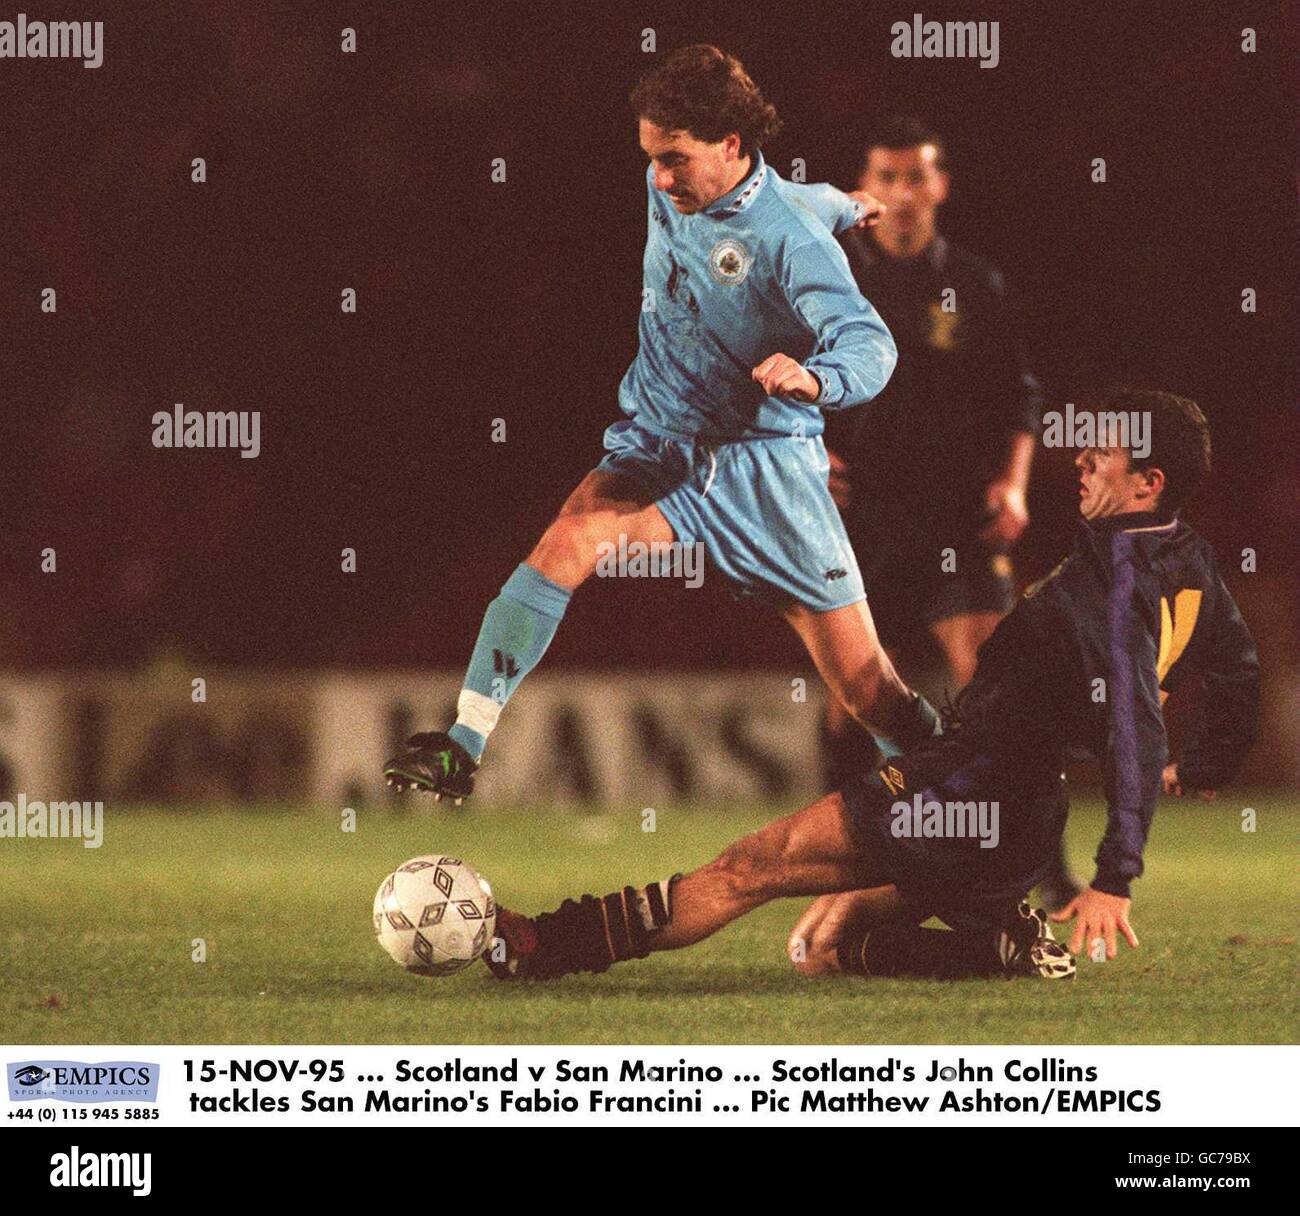 15-NOV-95. Escocia contra San Marino. John Collins, de Escocia, se enfrenta a Fabio Francini, de San Marino Foto de stock